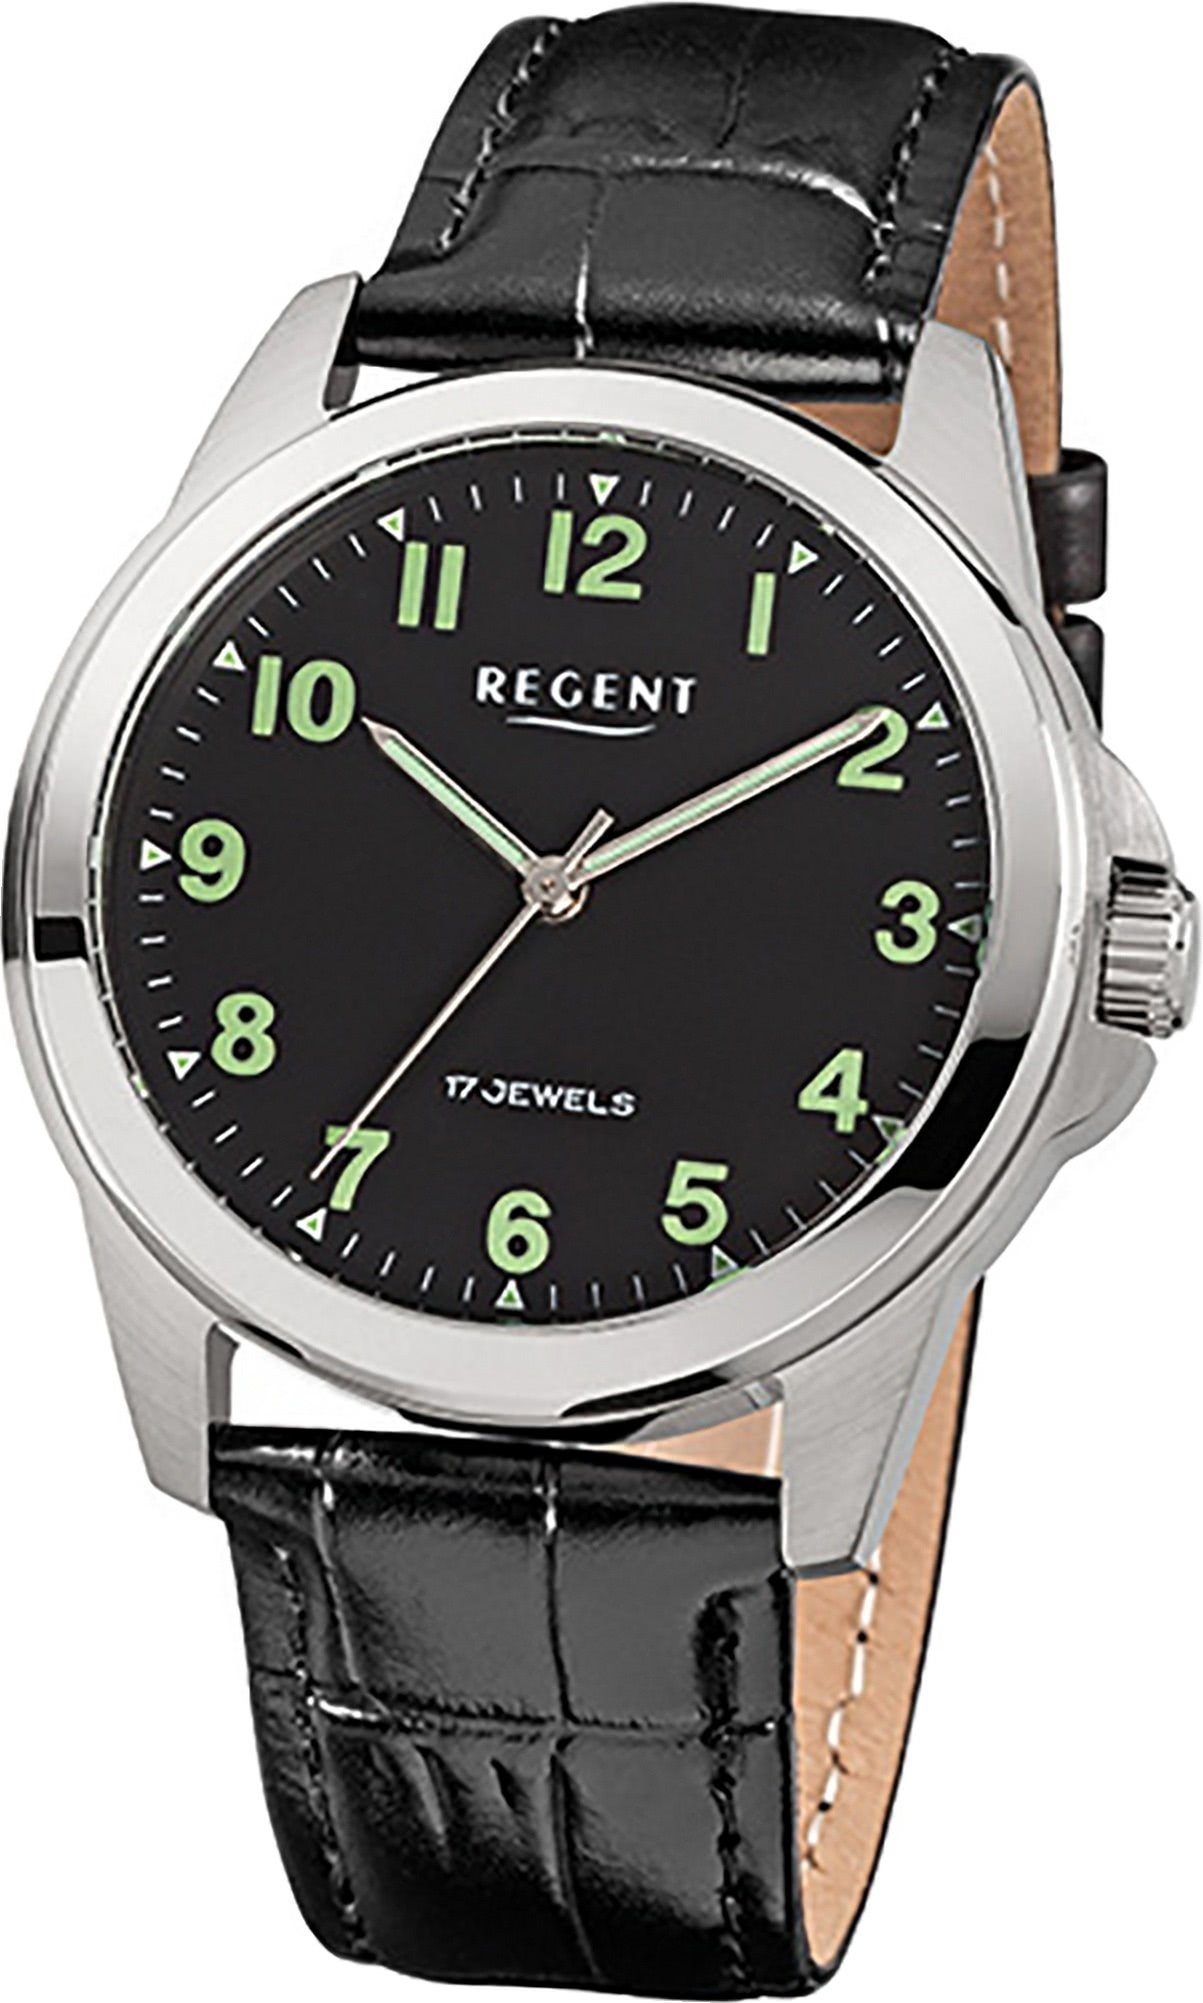 Regent Quarzuhr Regent Leder Herren Uhr F-818 Handaufzug, Herrenuhr Lederarmband schwarz, rundes Gehäuse, mittel (ca. 39mm) | Quarzuhren